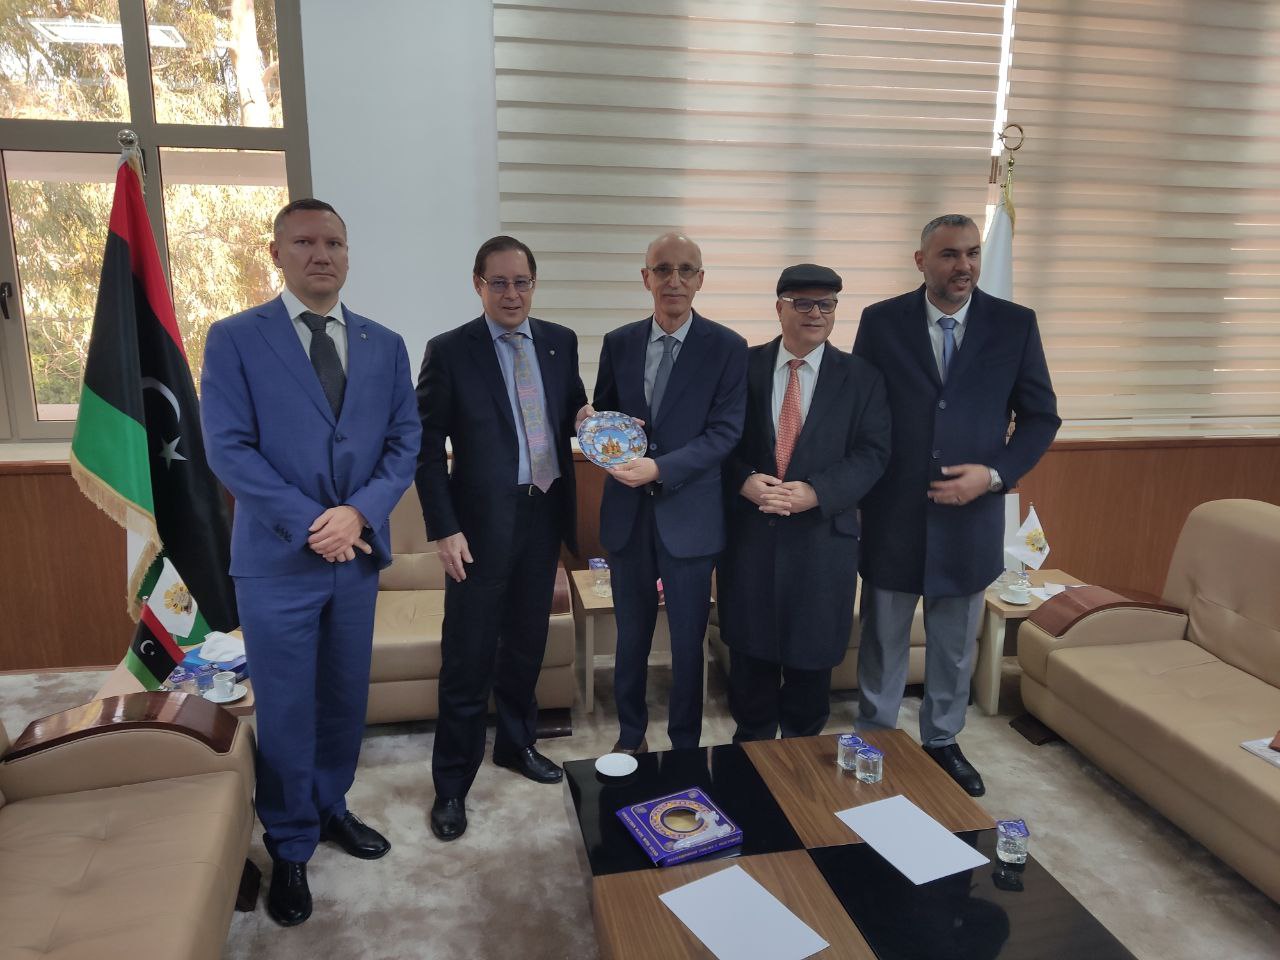 Посол России в Ливии Айдар Аганин на встрече с ректором университета Триполи  Халедом Оуном